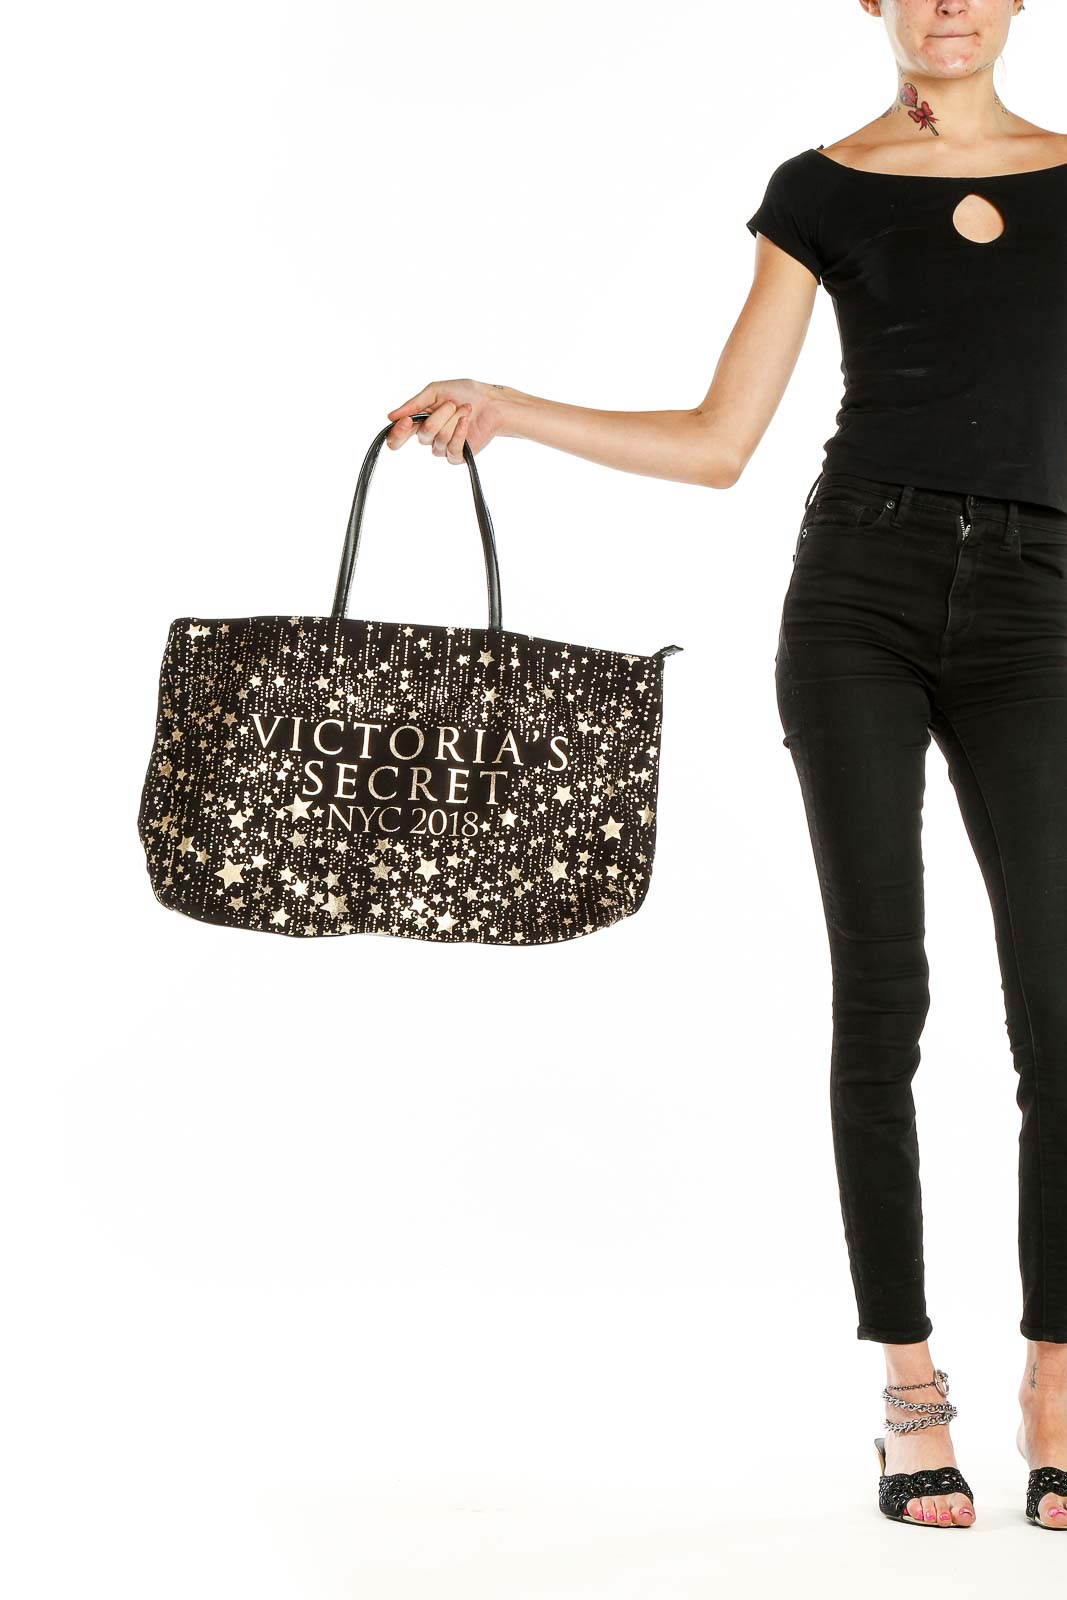 Victoria's Secret Cheetah Print Handbags